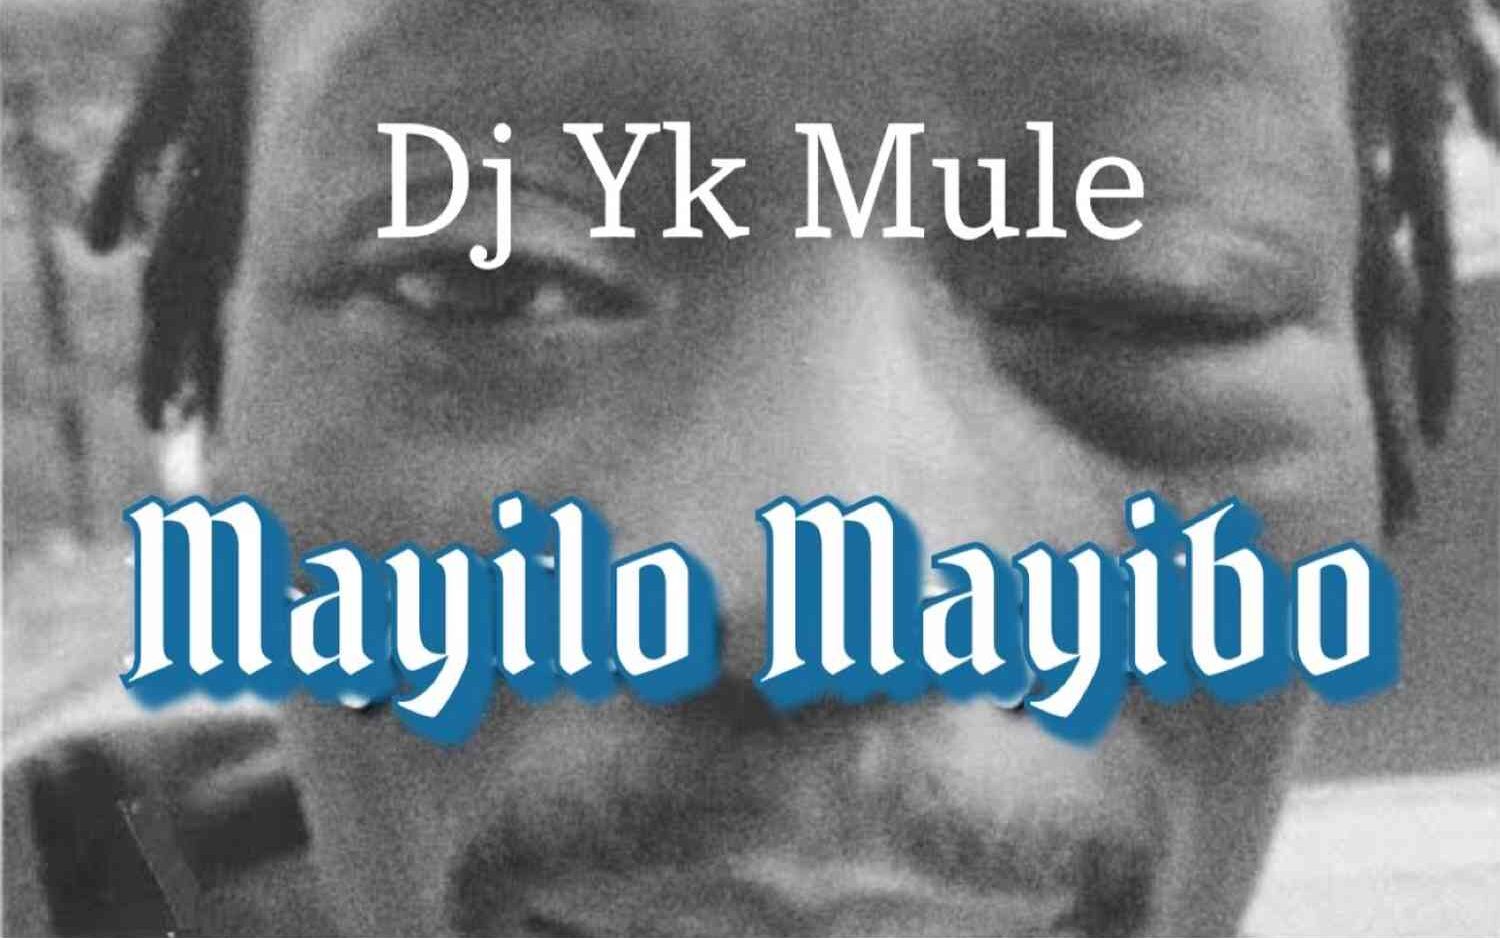 Mayilo Mayibo DJ Yk Mule edited